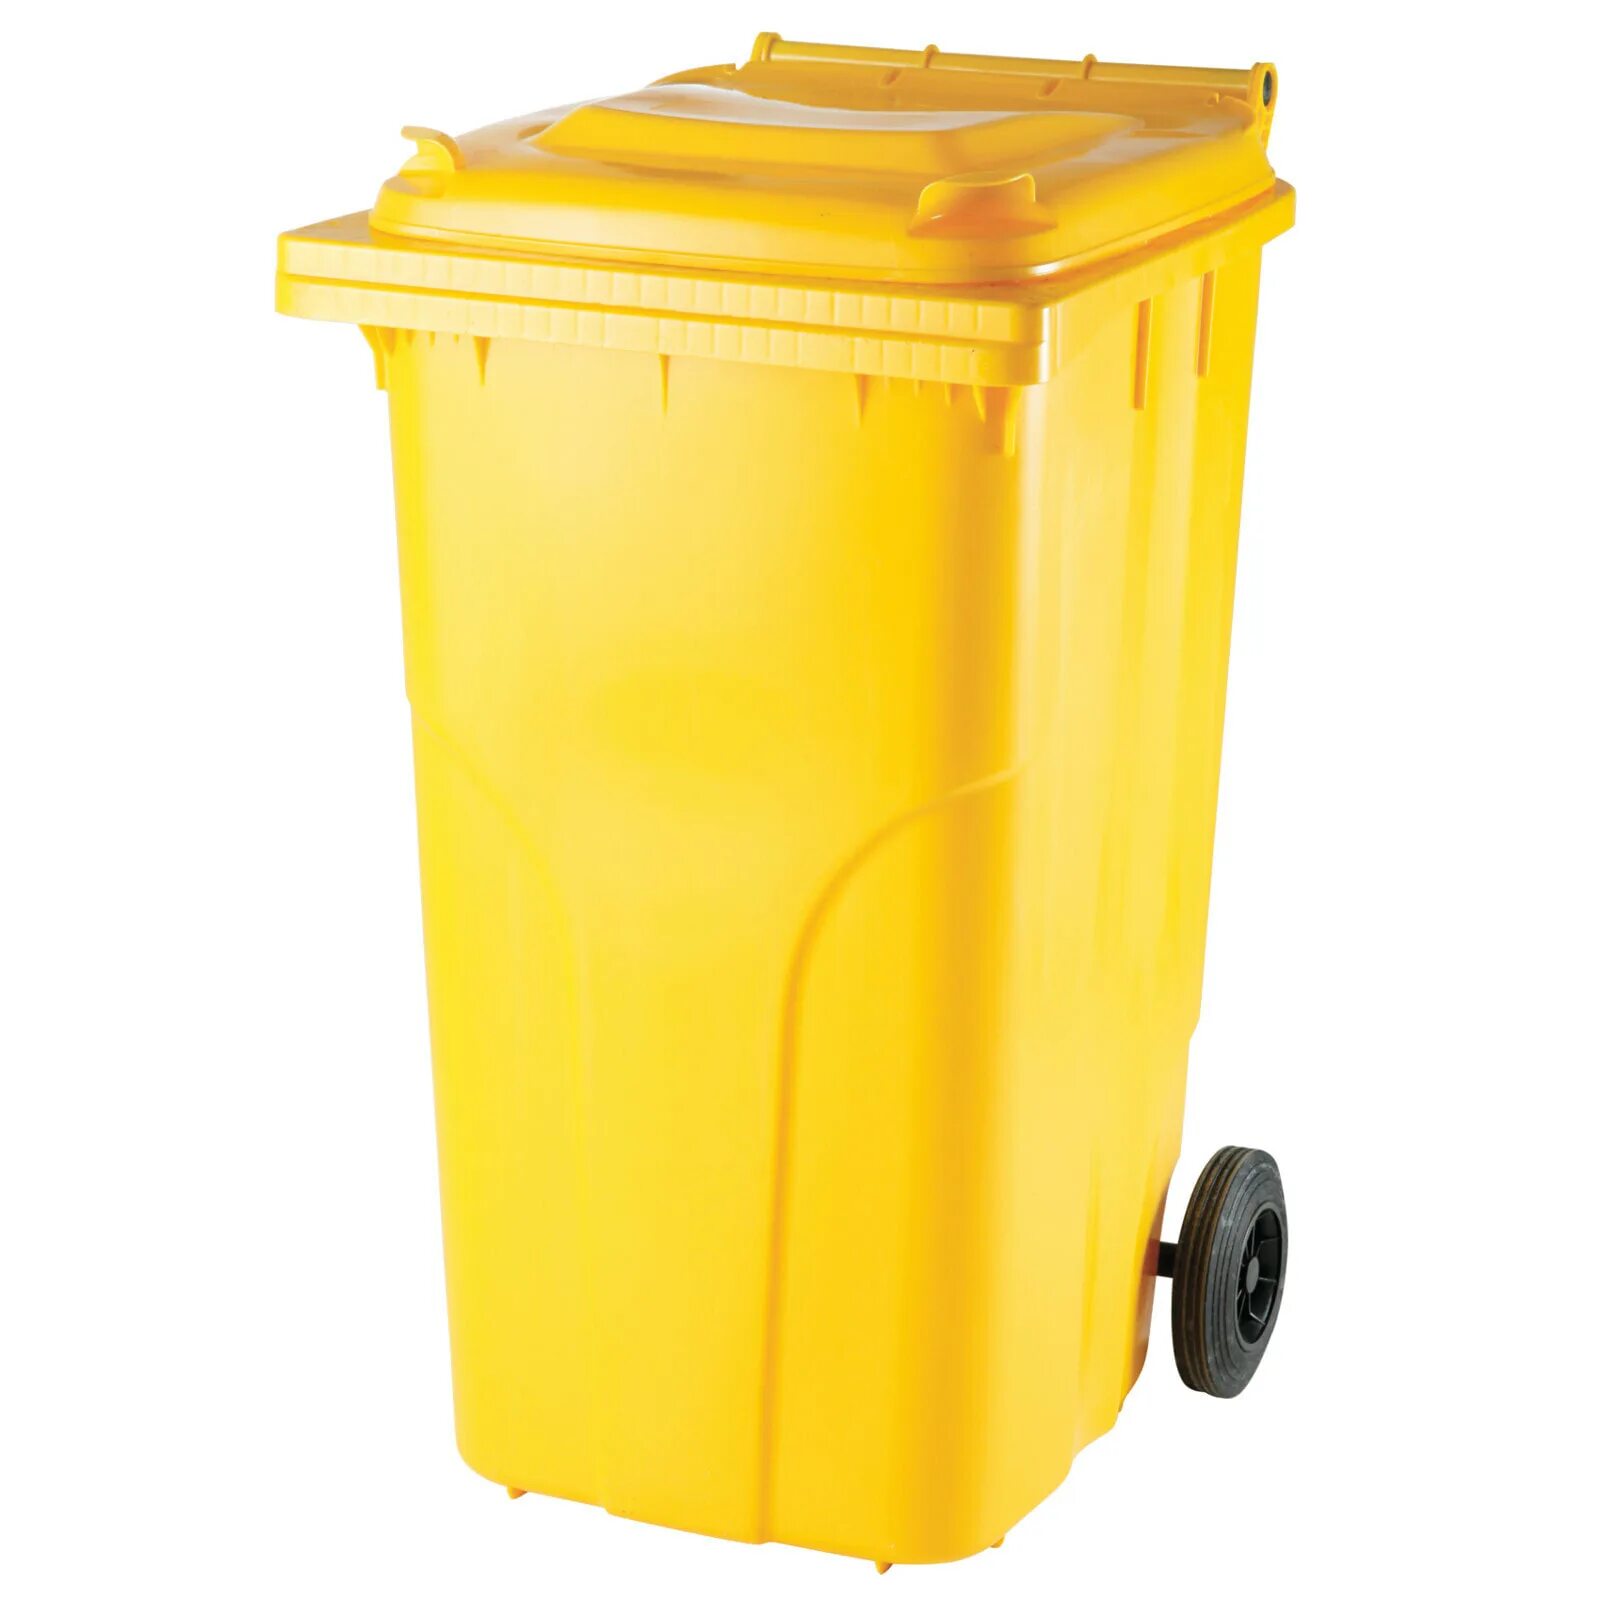 Бак для отходов пластиковый 120л желтый. Контейнер мусорный 240л желтый МКТ. Бак для ТБО 240 Л. Контейнер внутрикорпусной 120 л МКТ-120 С педалью. Бак для сбора медицинских отходов